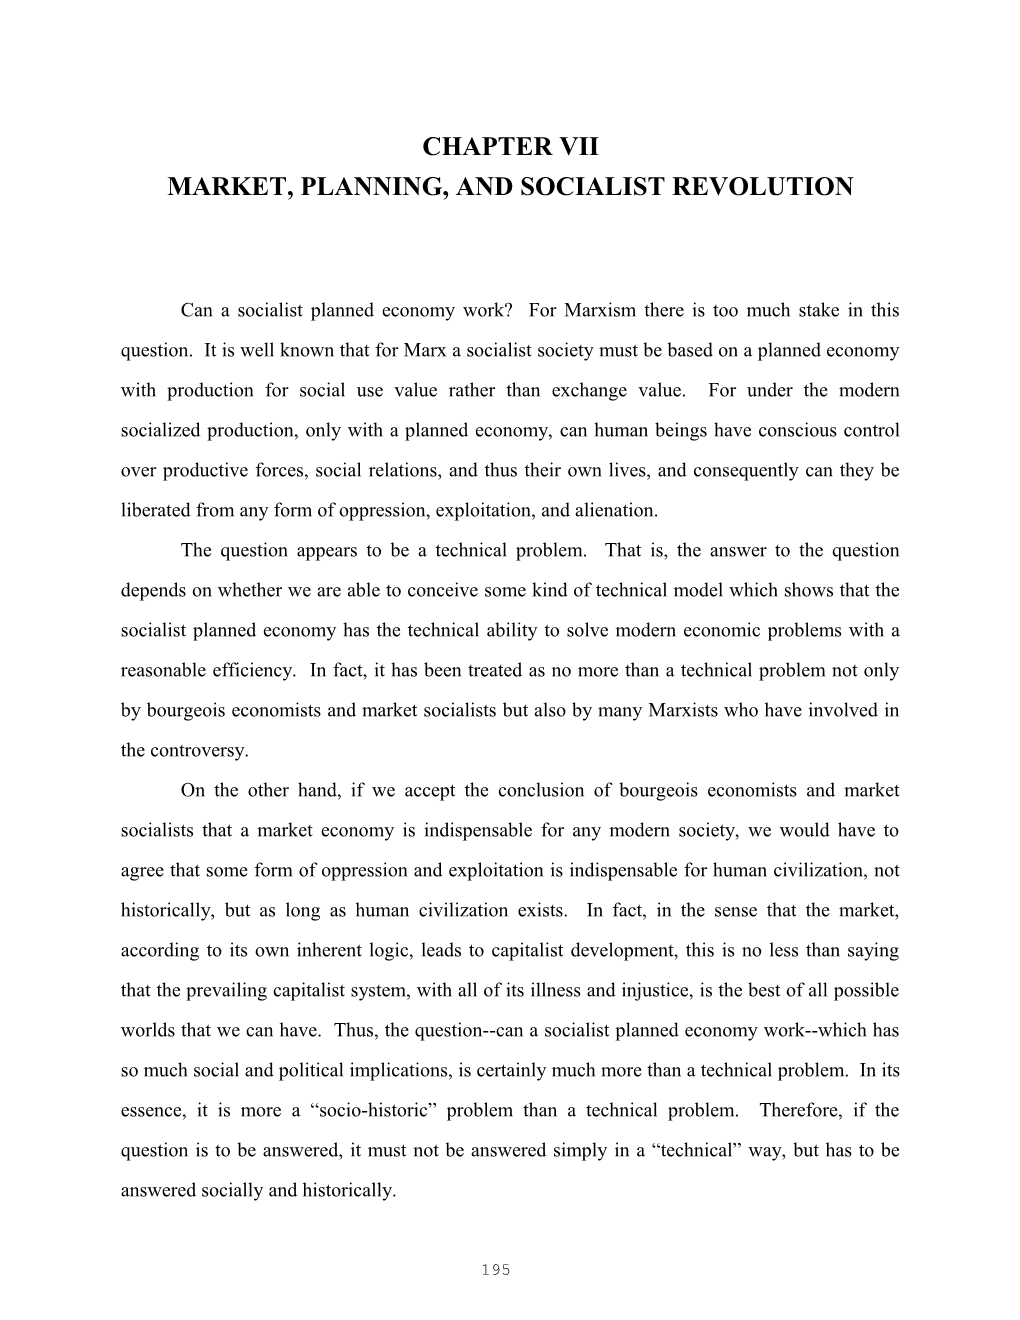 Market, Planning, and Socialist Revolution